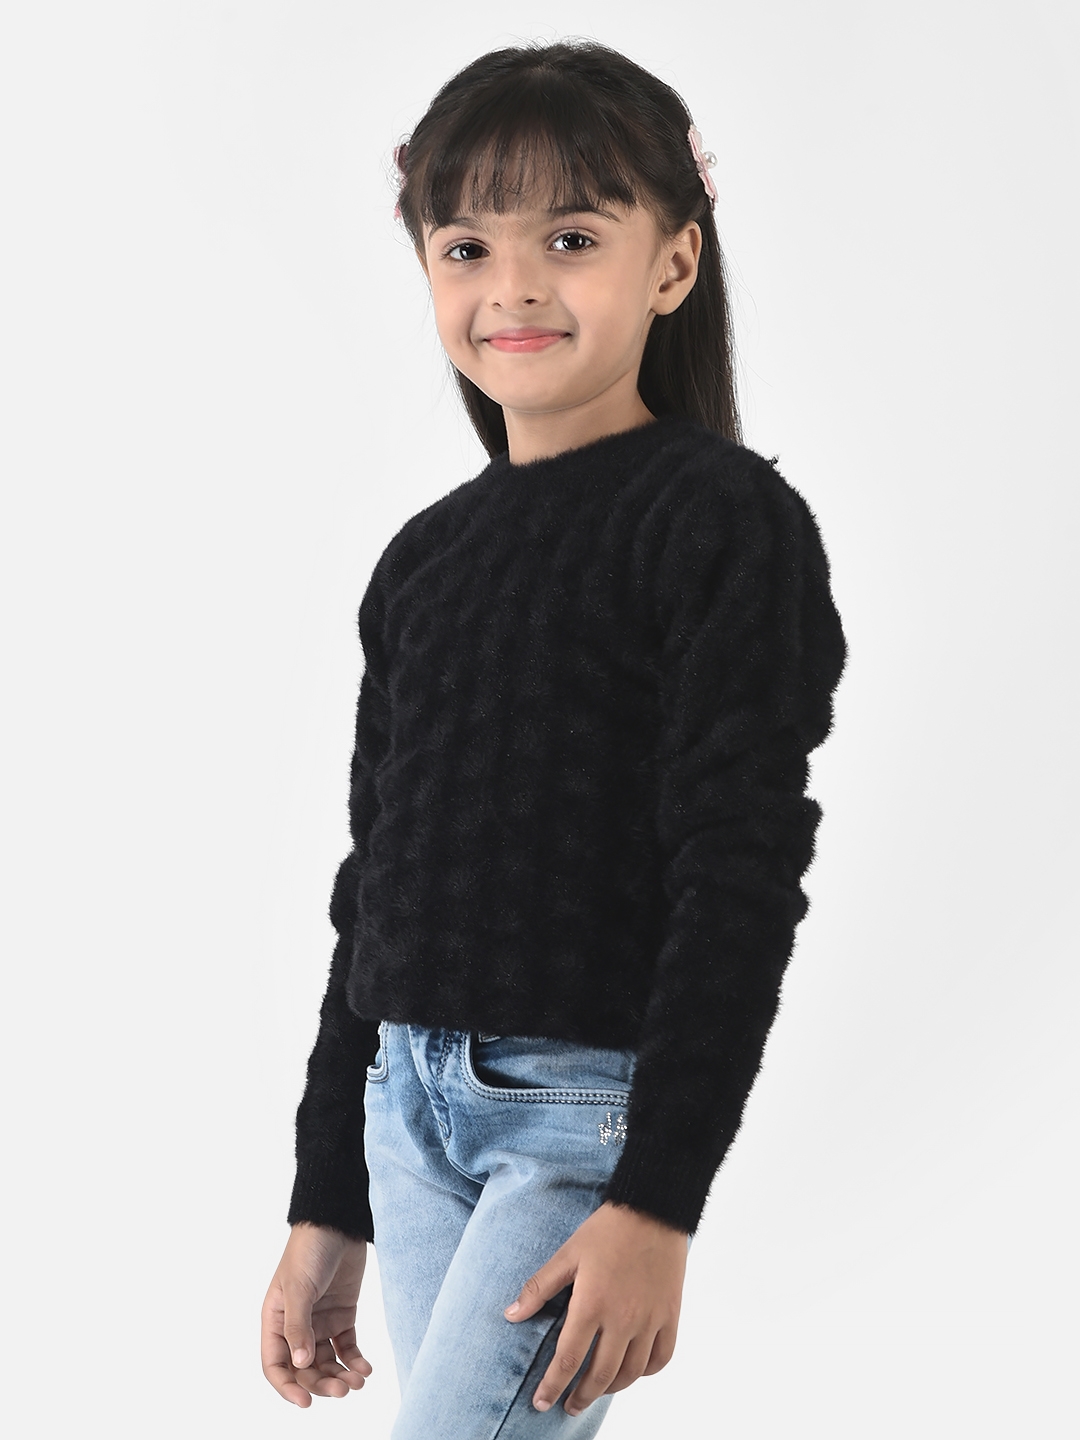 Crimsoune Club | Crimsoune Club Girls Black Sweater in Self-Designed Print 3